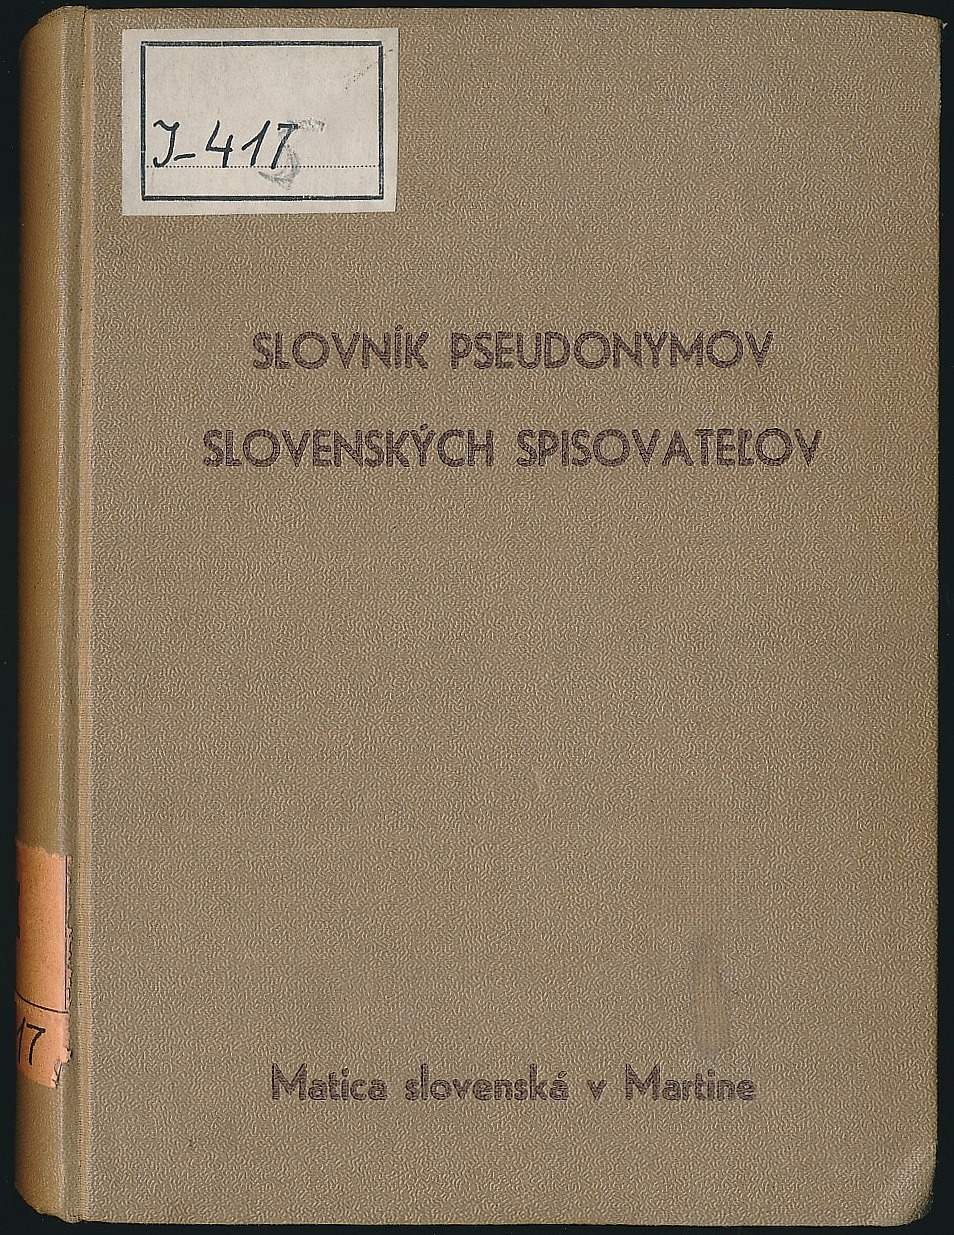 Slovník pseudonymov slovenských spisovateľov